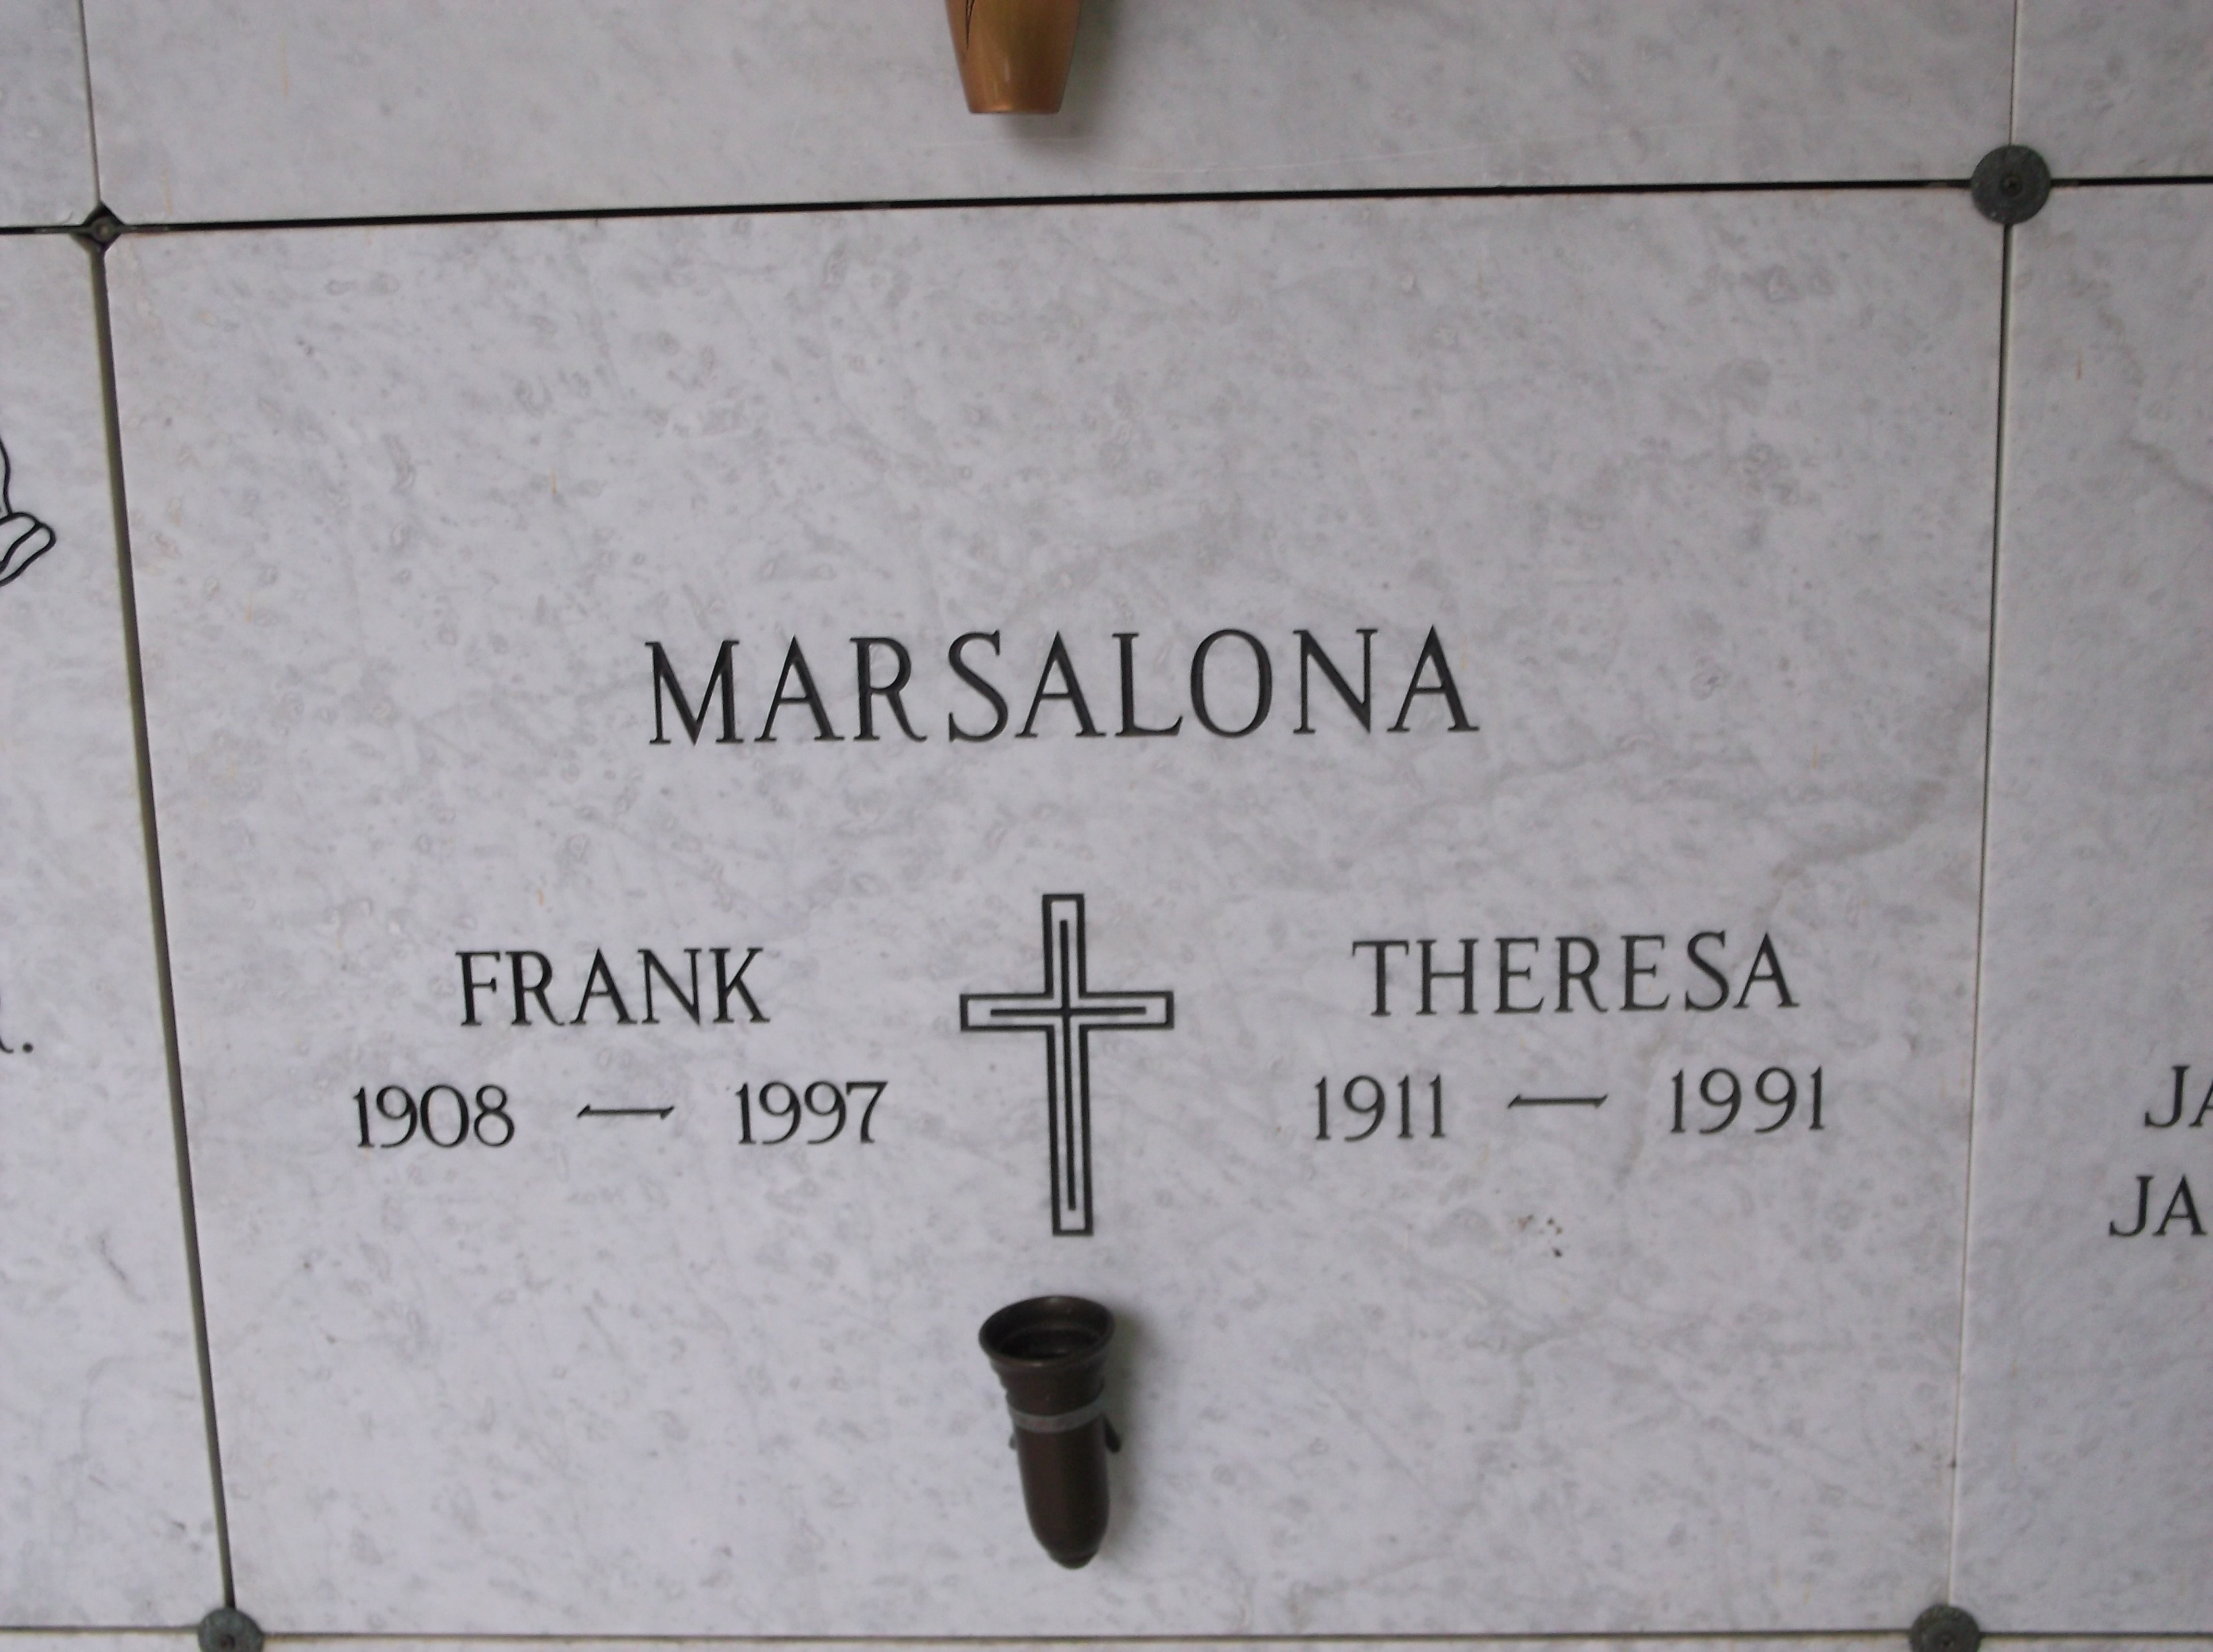 Frank Marsalona